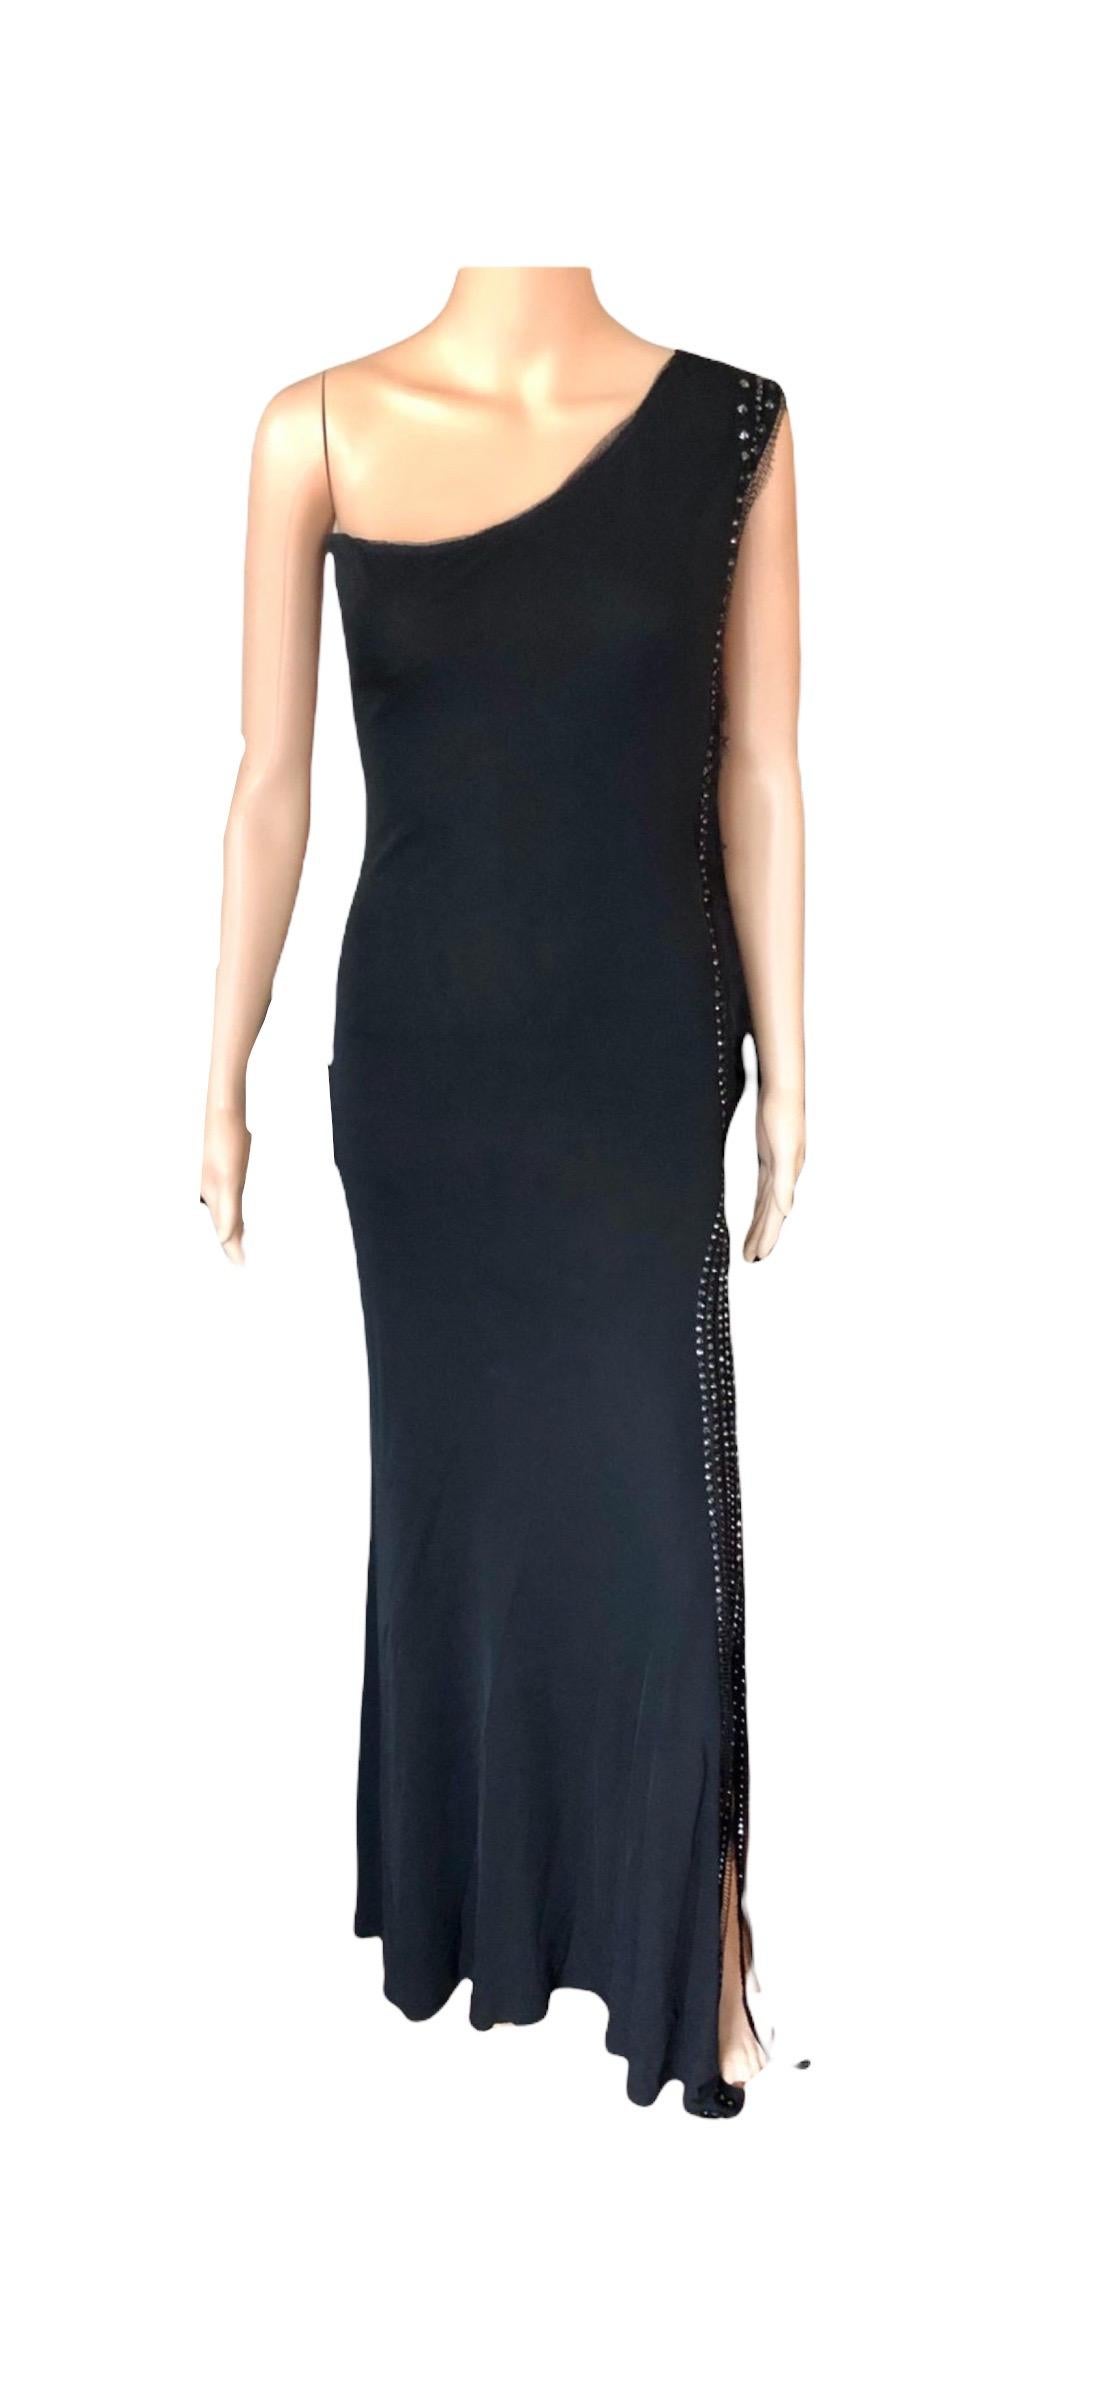 Jean Paul Gaultier Vintage Embellished One Shoulder Black Evening Dress Gown For Sale 4